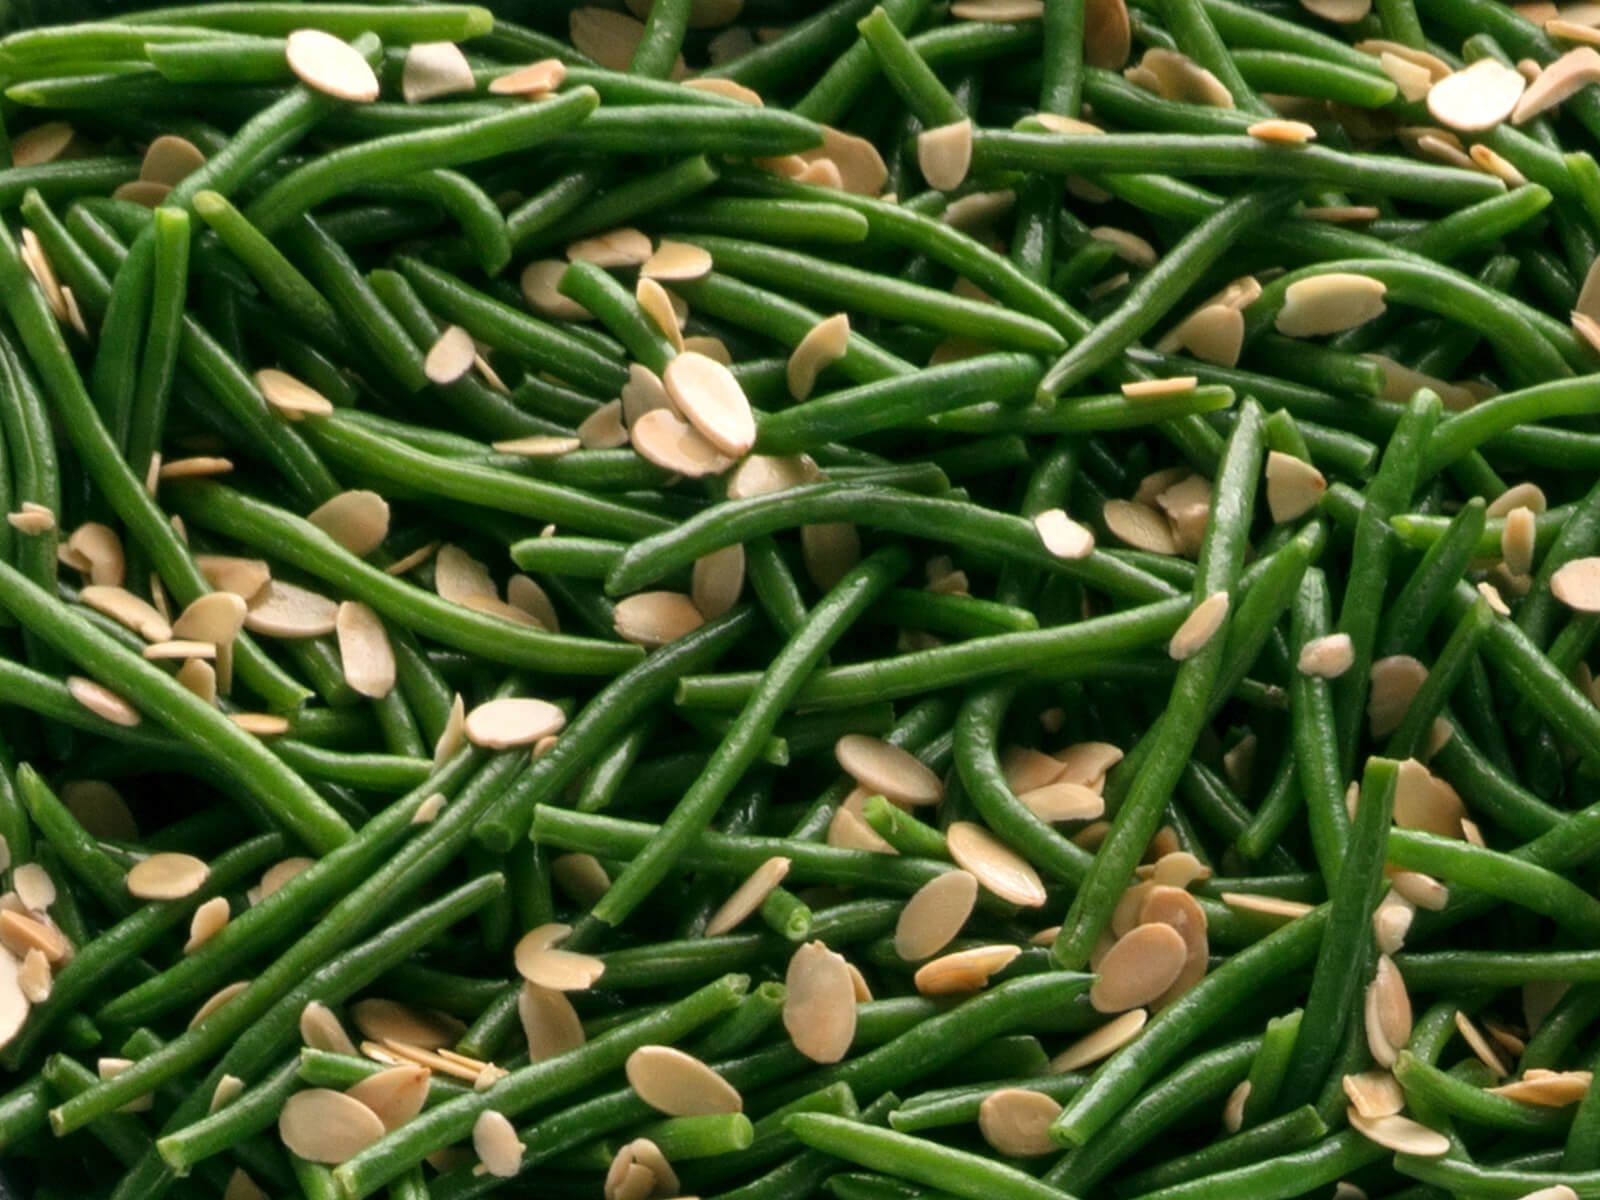 Fresh Green Beans Almondine - serves 10